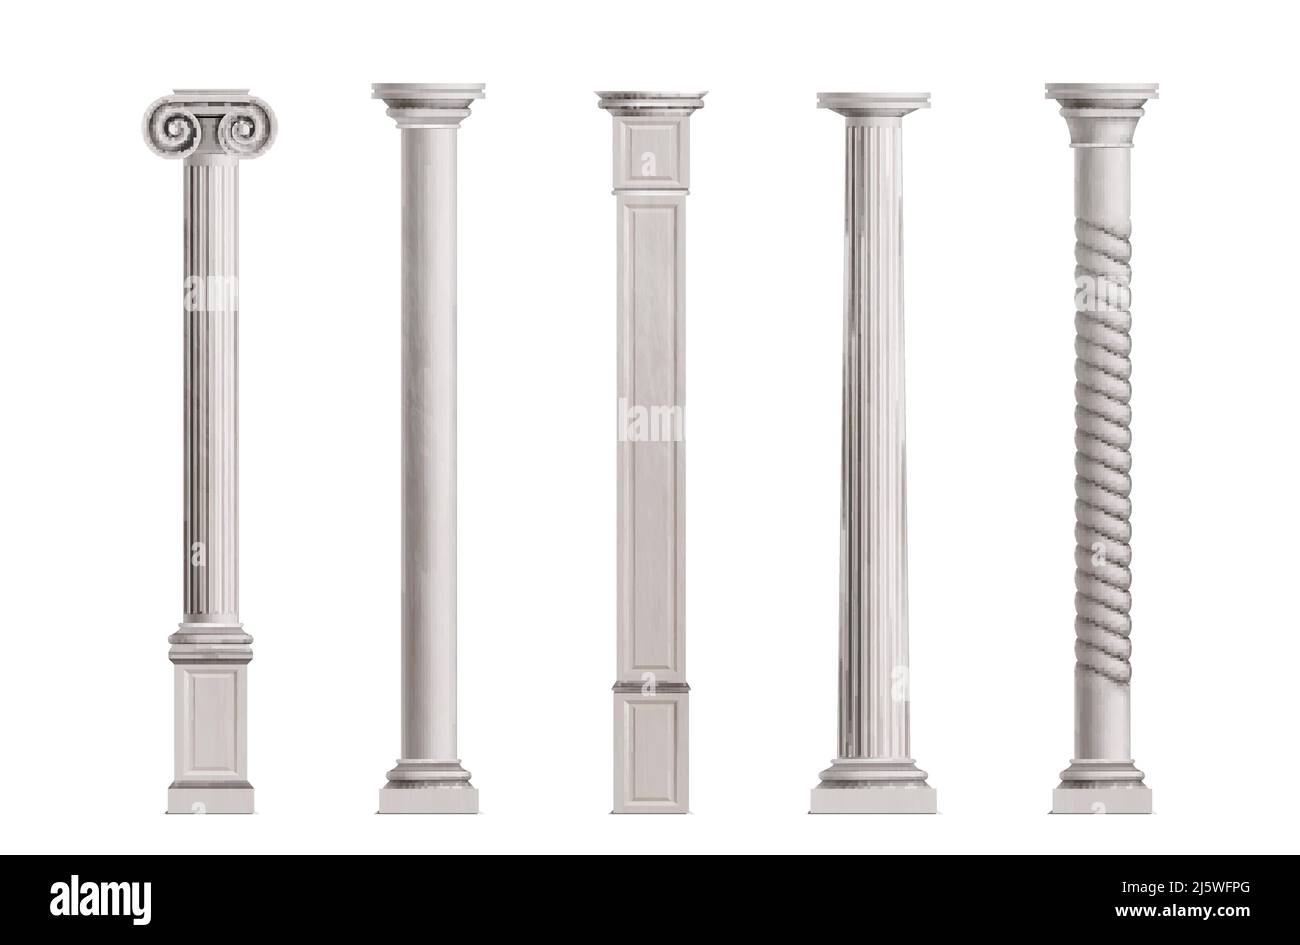 Colonne cubiche e cilindriche in marmo bianco con superficie liscia e testurizzata 3D illustrazioni vettoriali realistiche isolate su sfondo bianco Illustrazione Vettoriale